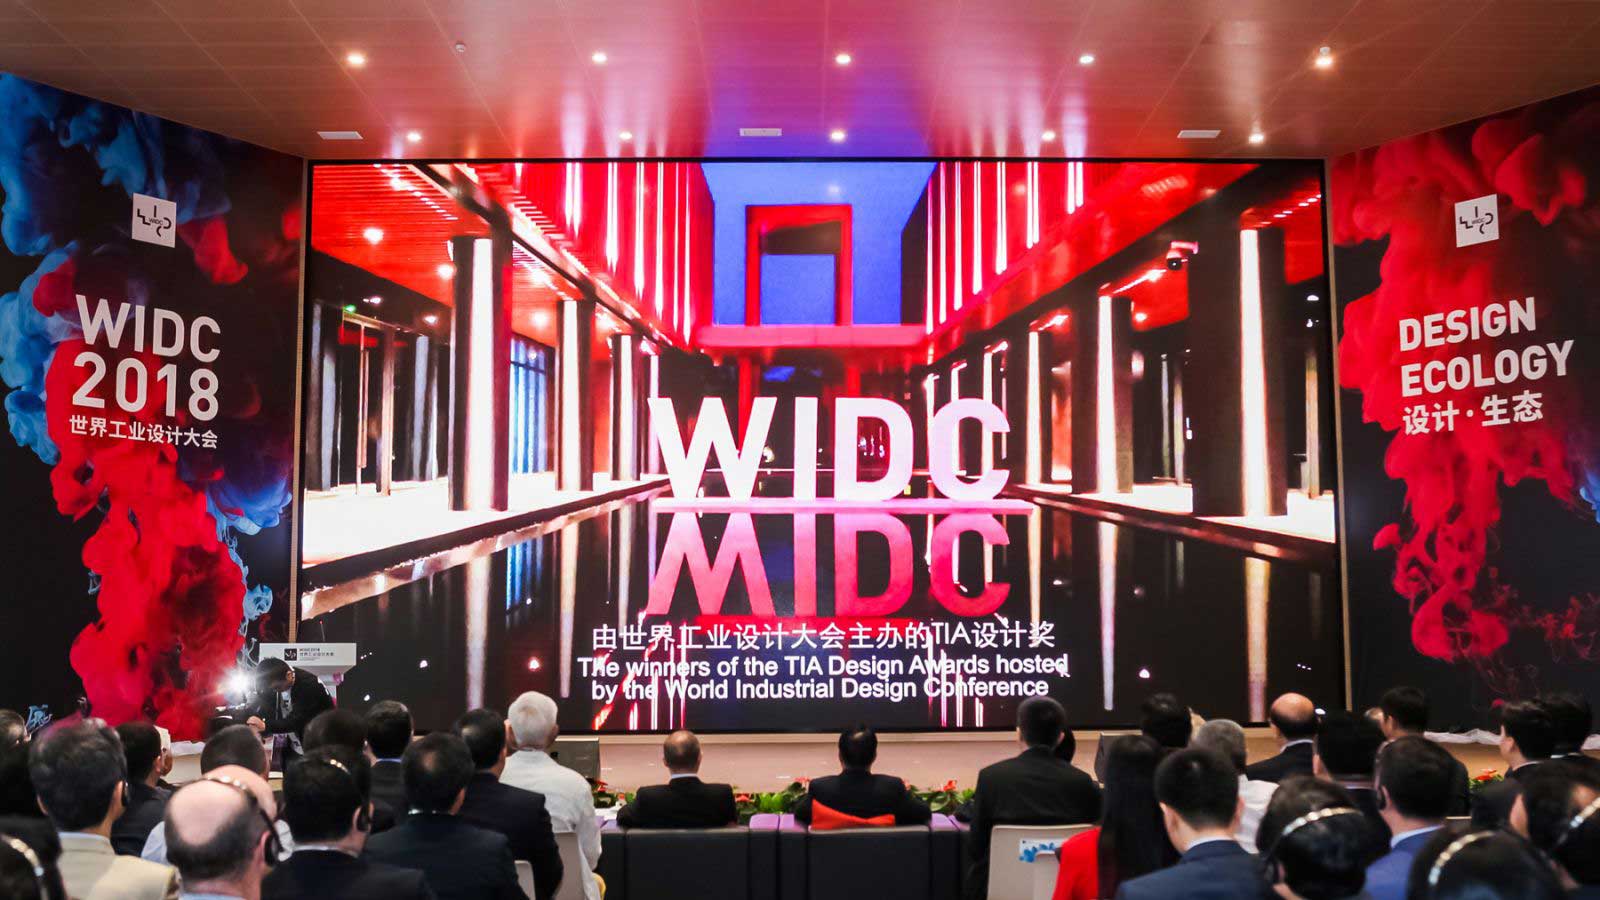 widc世界工业设计大会品牌形象设计